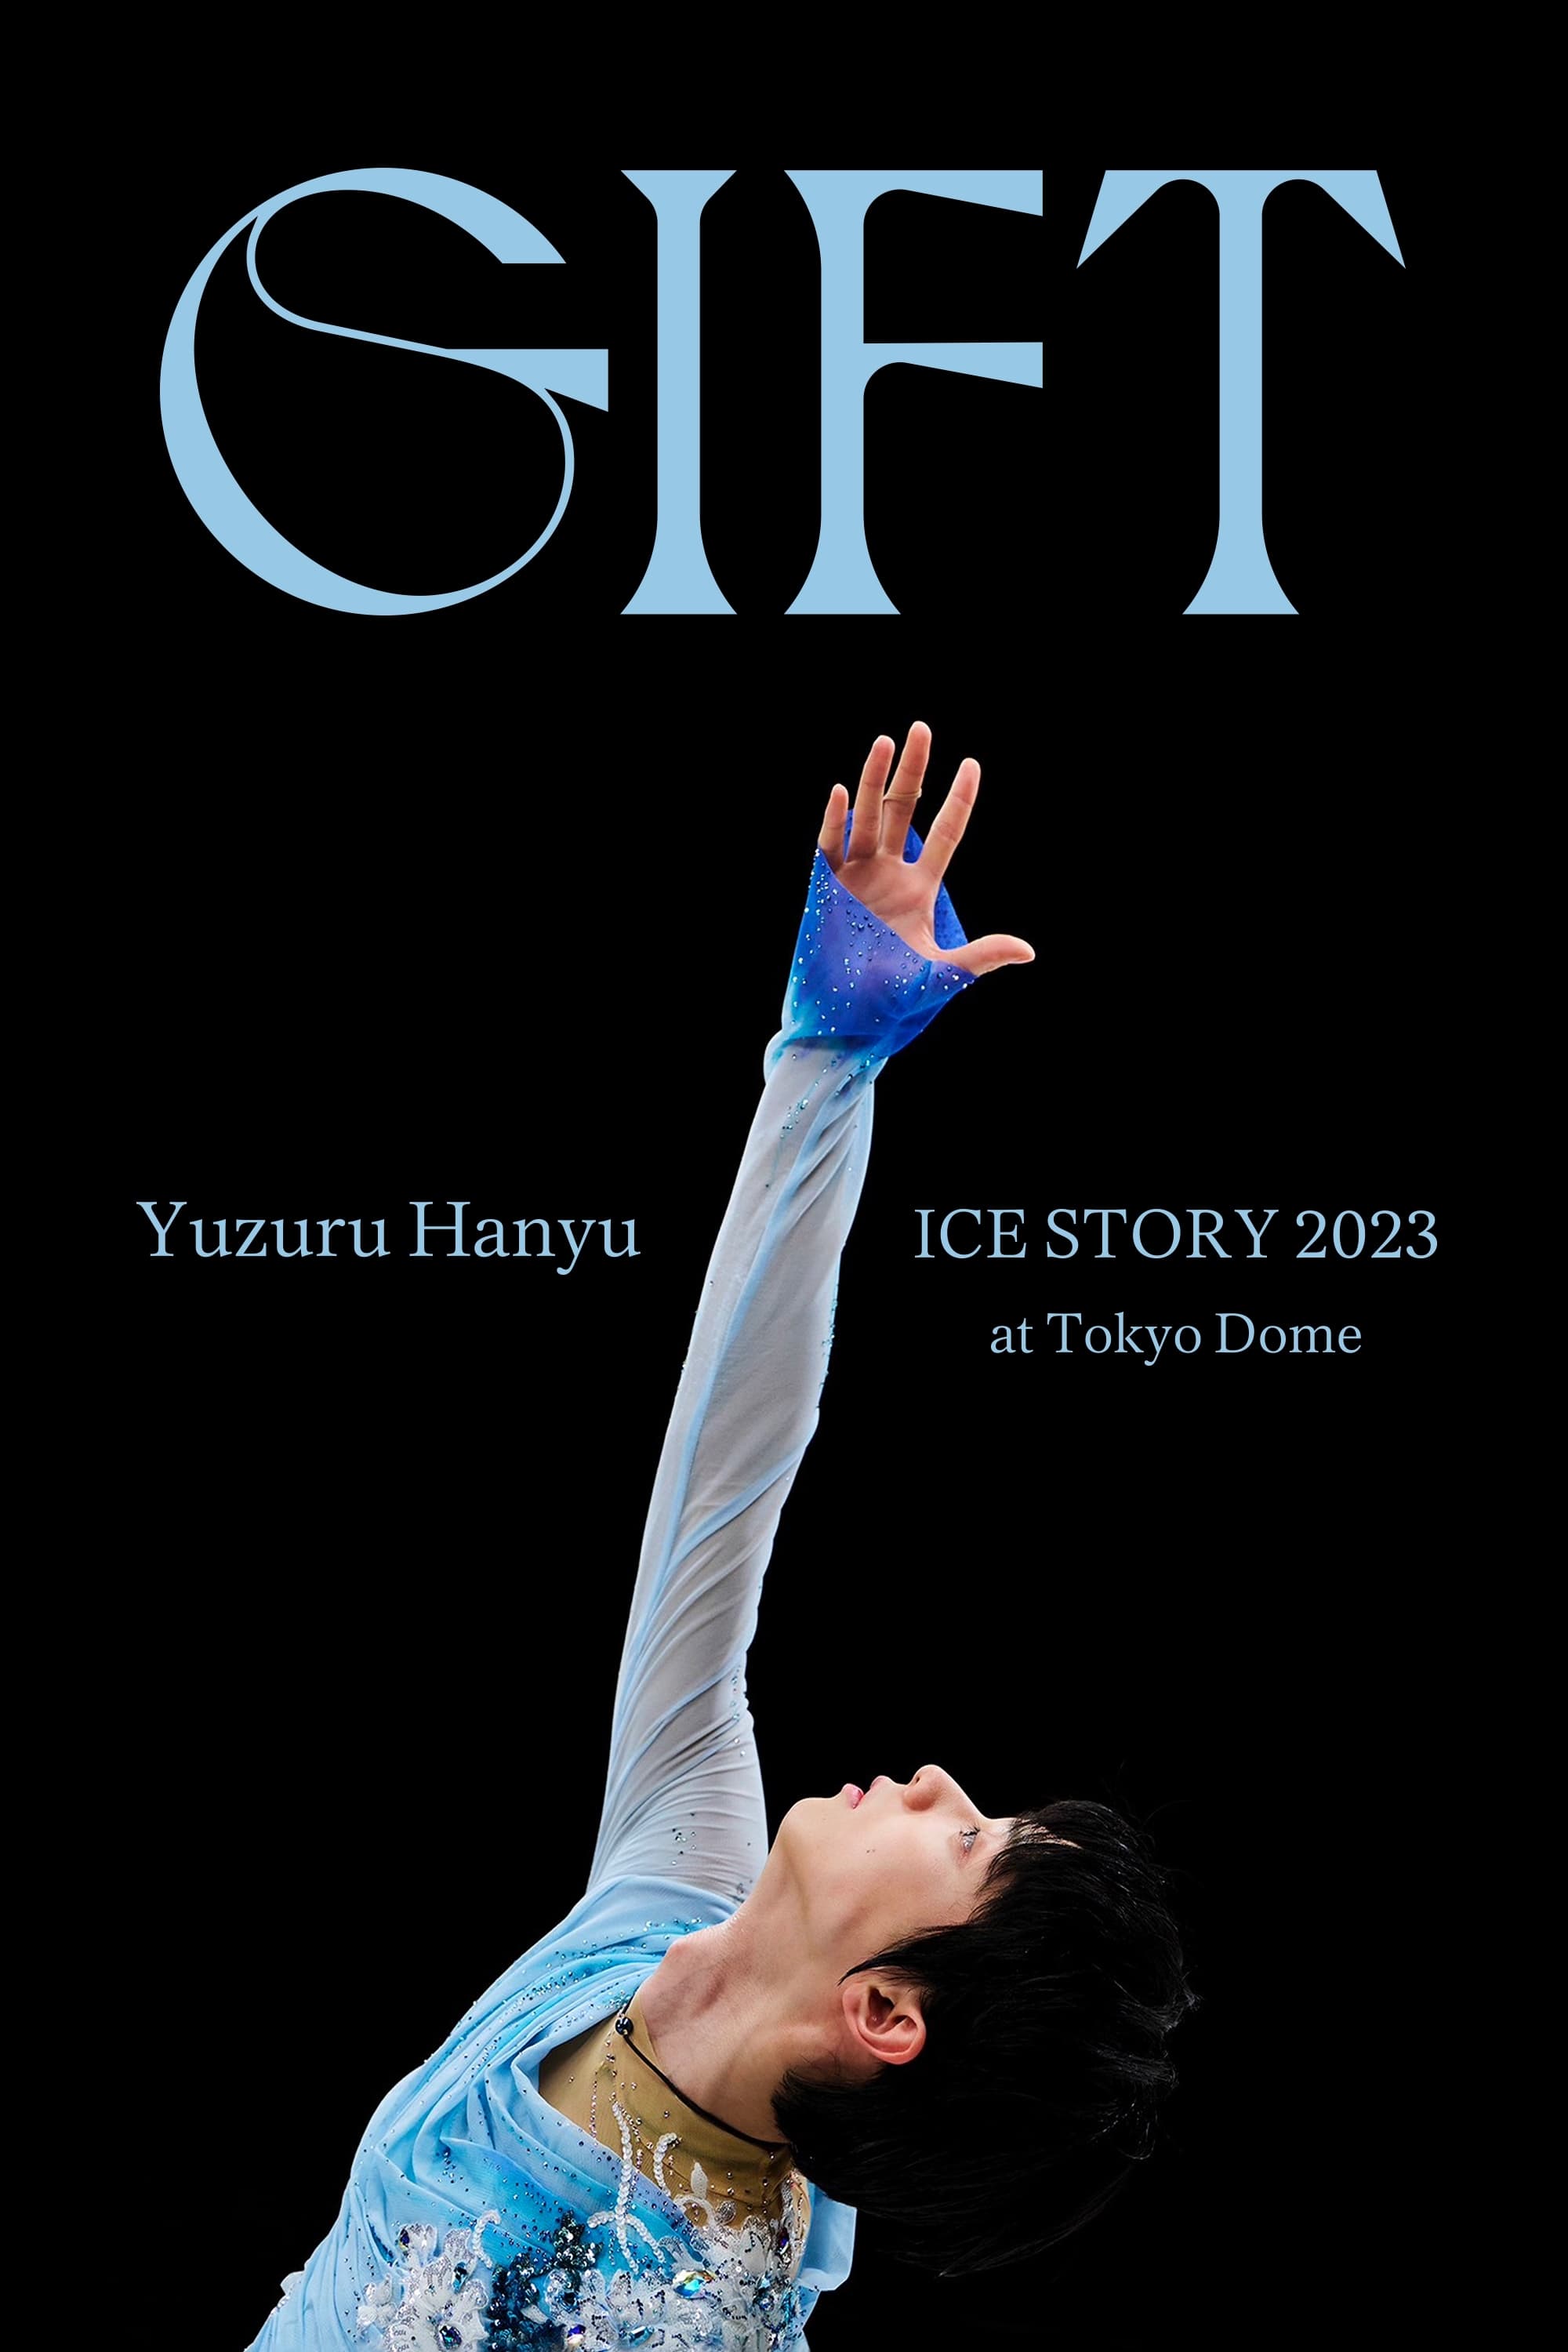 Yuzuru Hanyu ICE STORY 2023 "GIFT" at Tokyo Dome